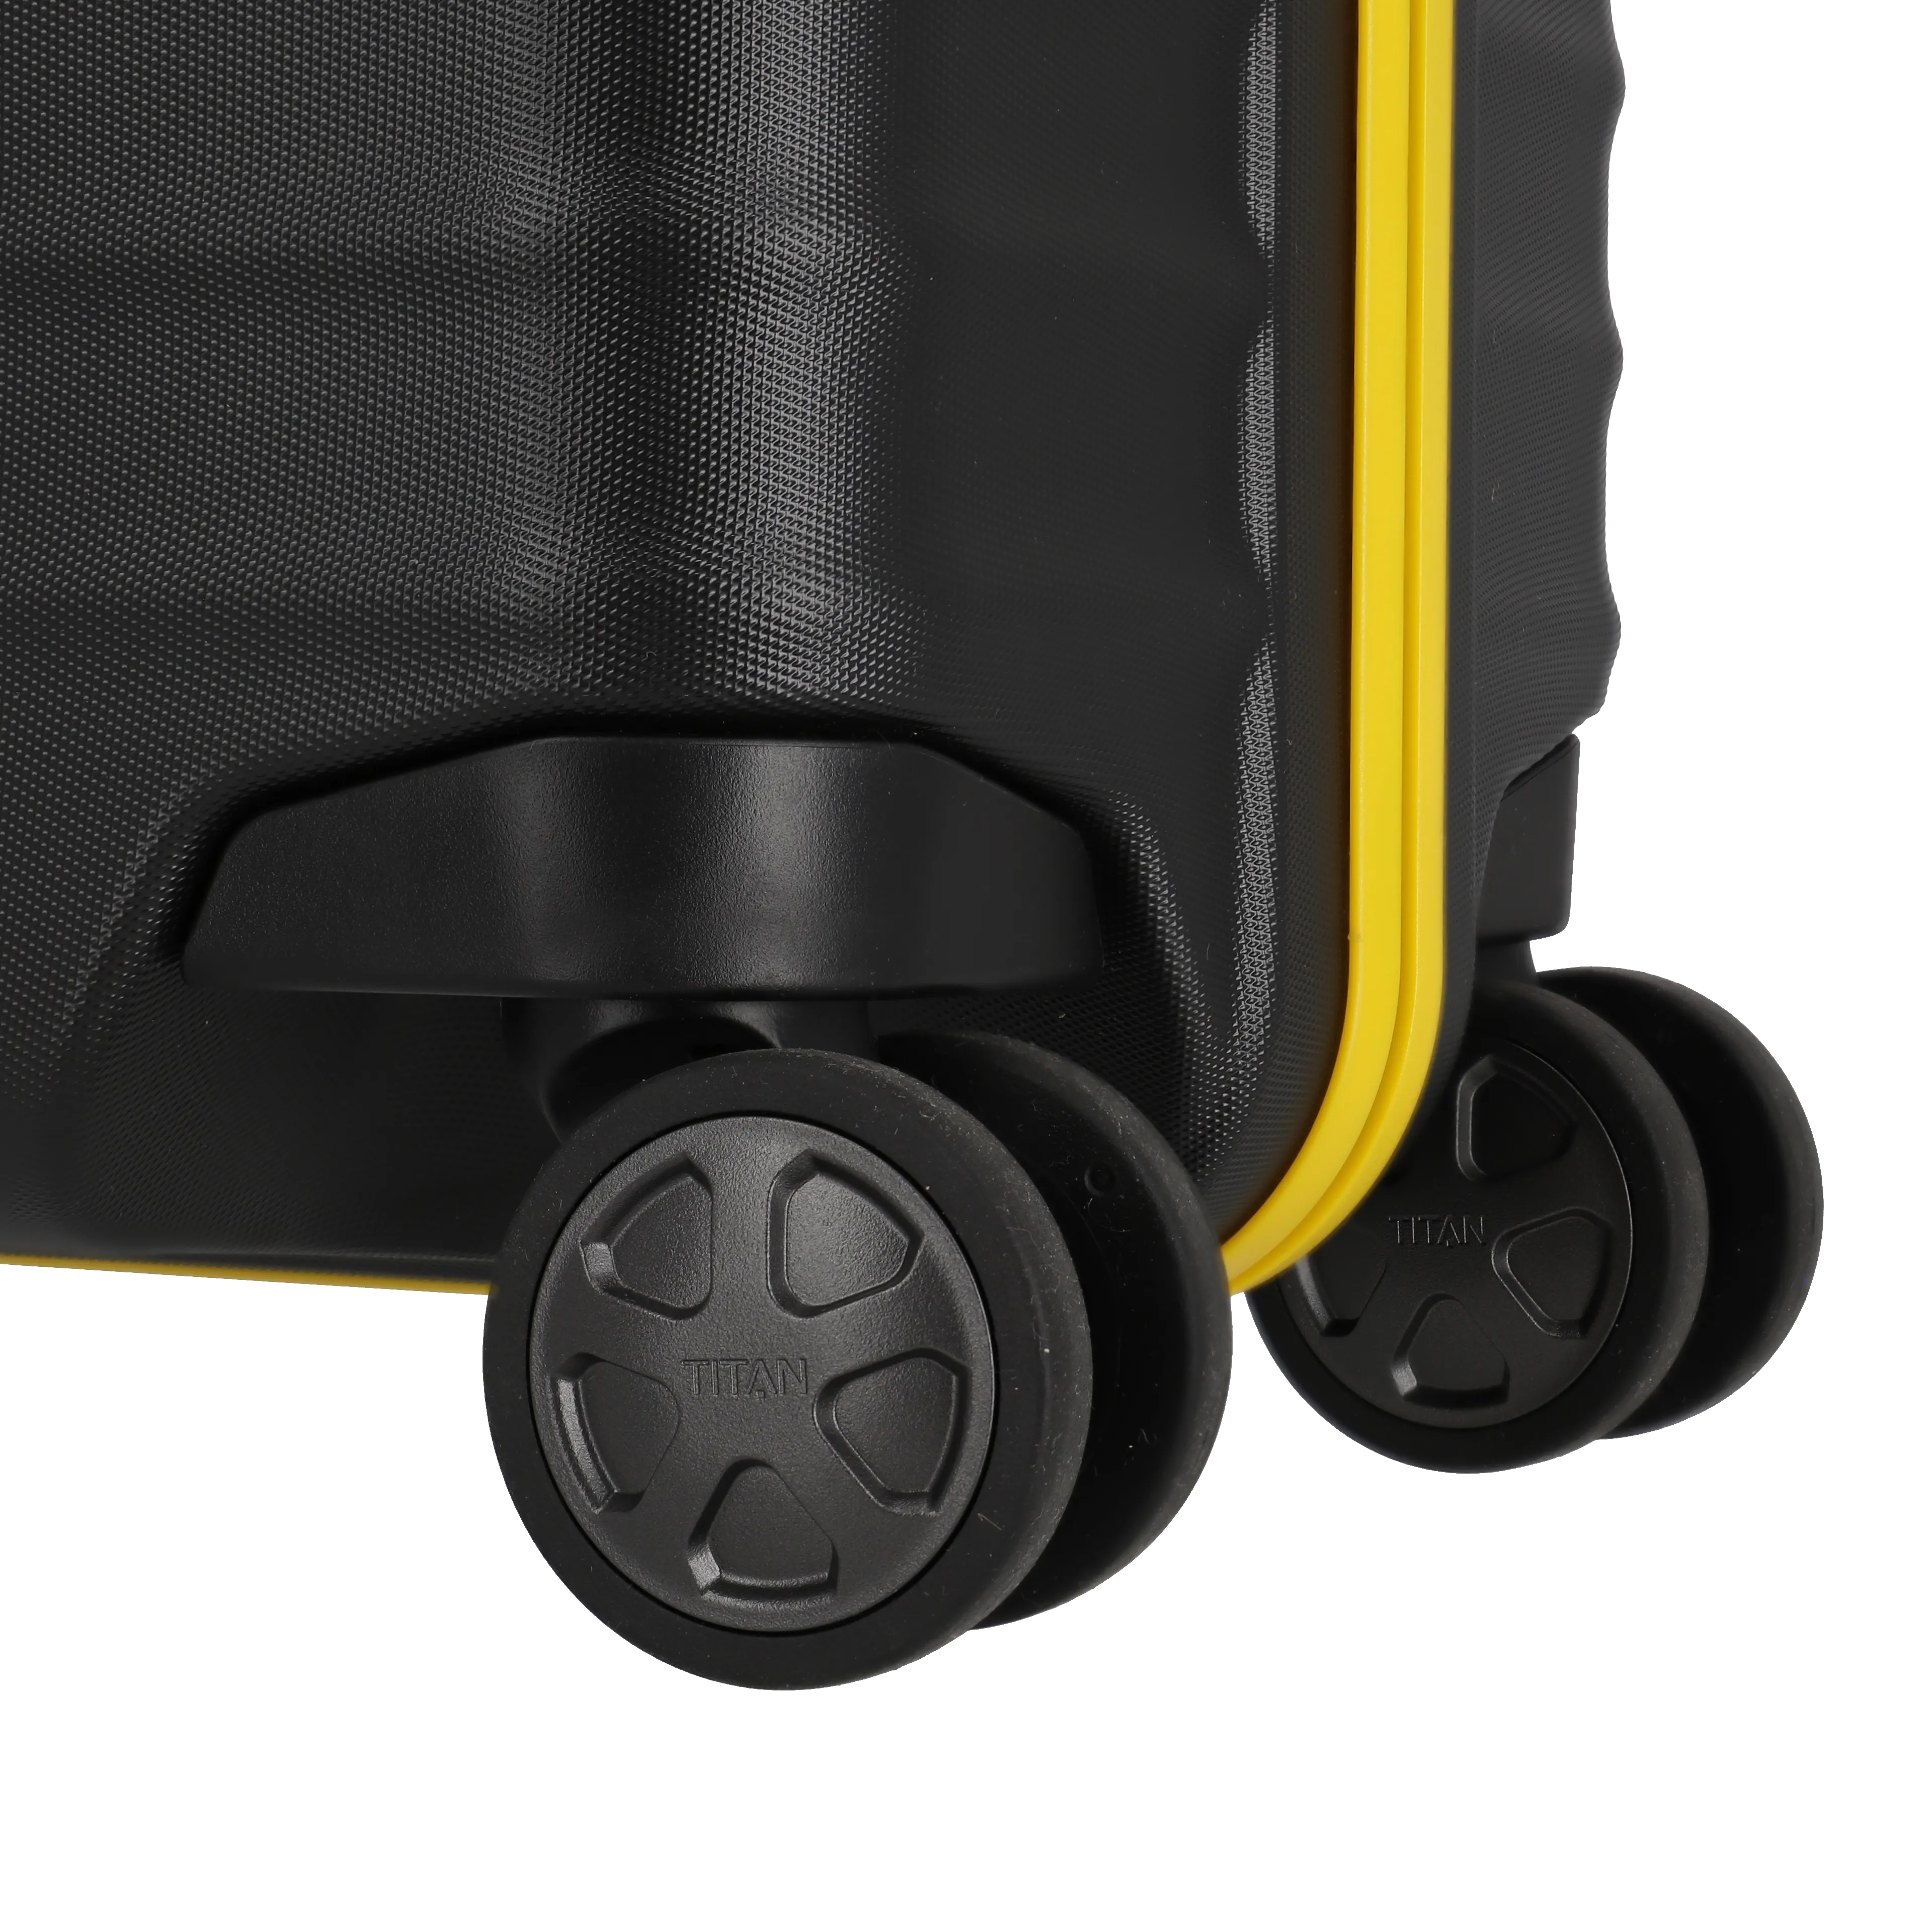 Ein TITAN Koffer der Serie LITRON FrameBVB Edition Nahaufnahme Räder in schwarz/gelb